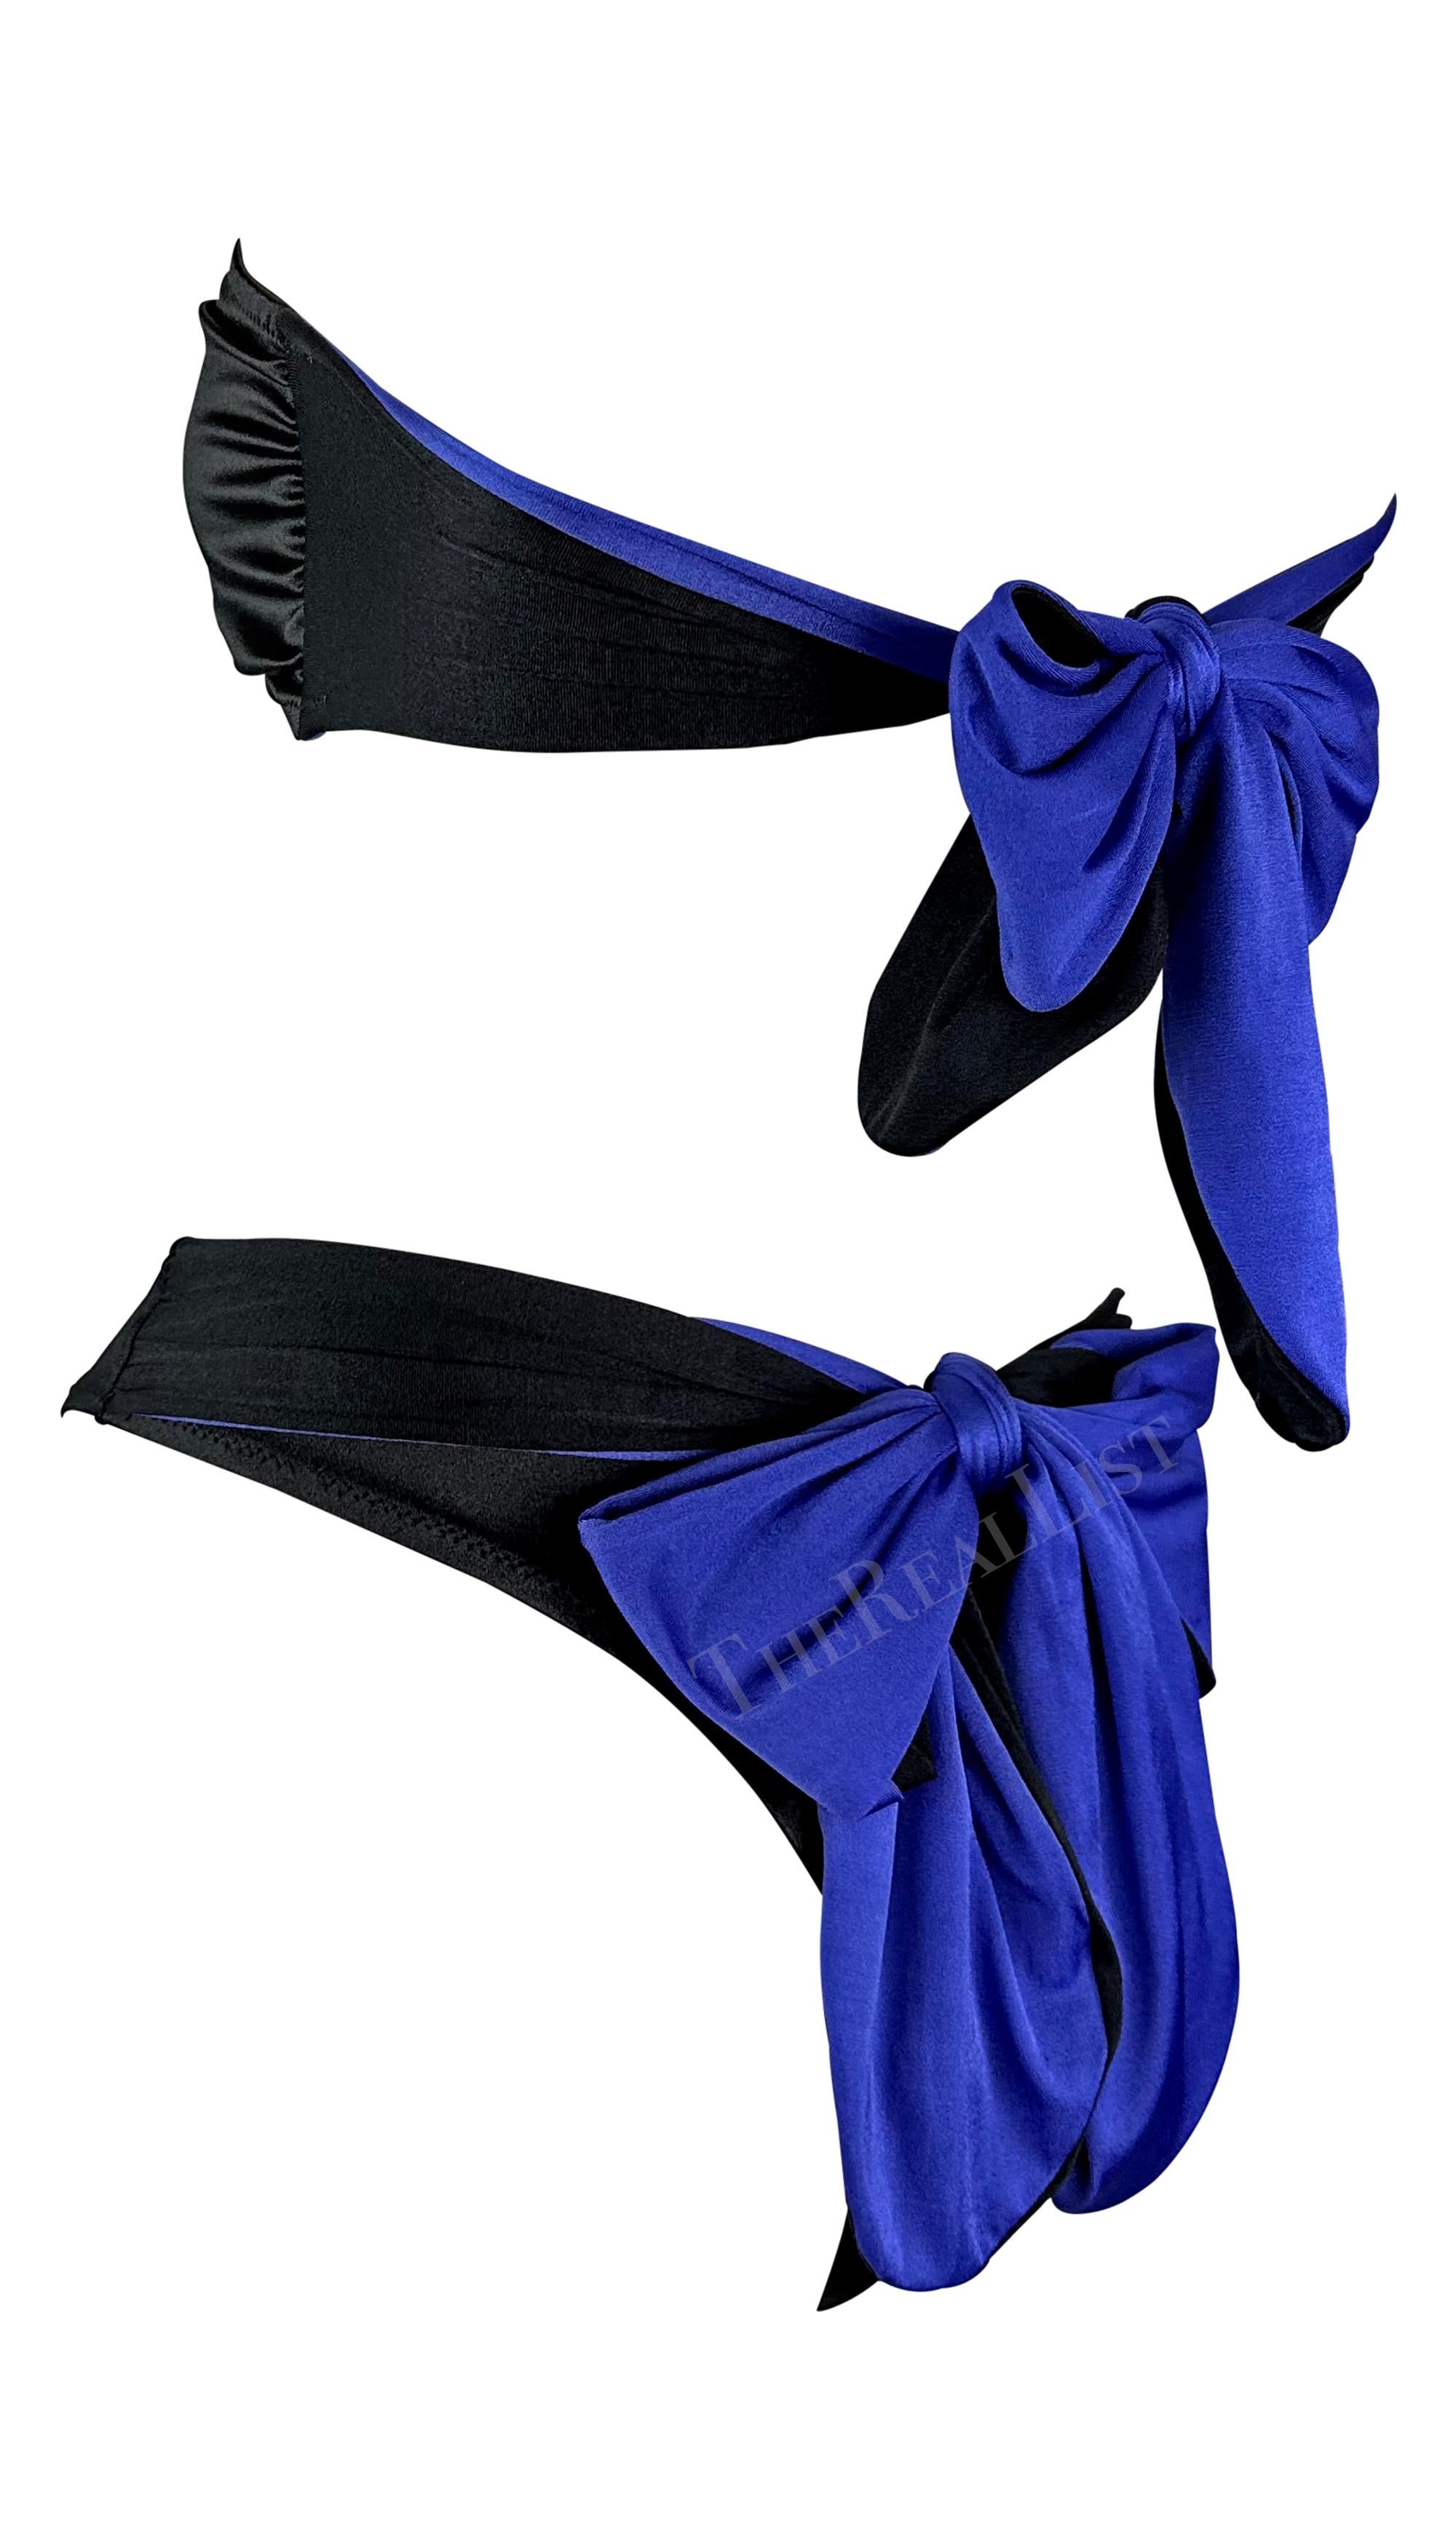 Wir präsentieren einen schicken schwarz-lila trägerlosen Gianni Versace Bikini, entworfen von Gianni Versace. Dieser zweifarbige Bikini aus den 1980er Jahren hat eine hohe Taille und eine lila Schleife über dem Po. Ein violetter Ring zwischen den